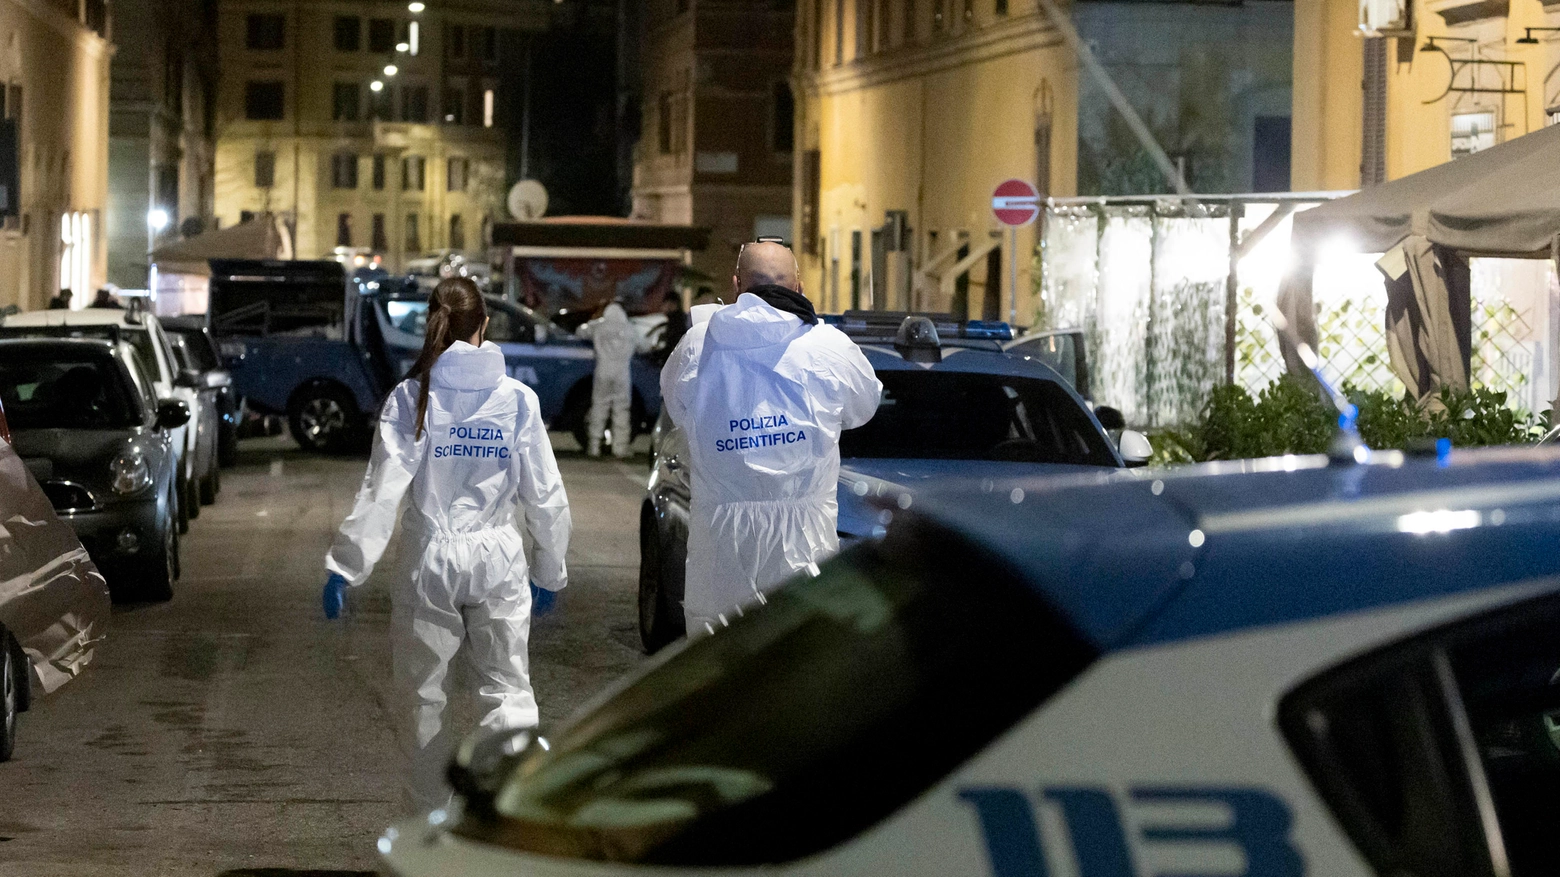 Un recente omicidio compiuto il 10 marzo scorso nel quartiere Esquilino a Roma: ucciso uno chef 41enne